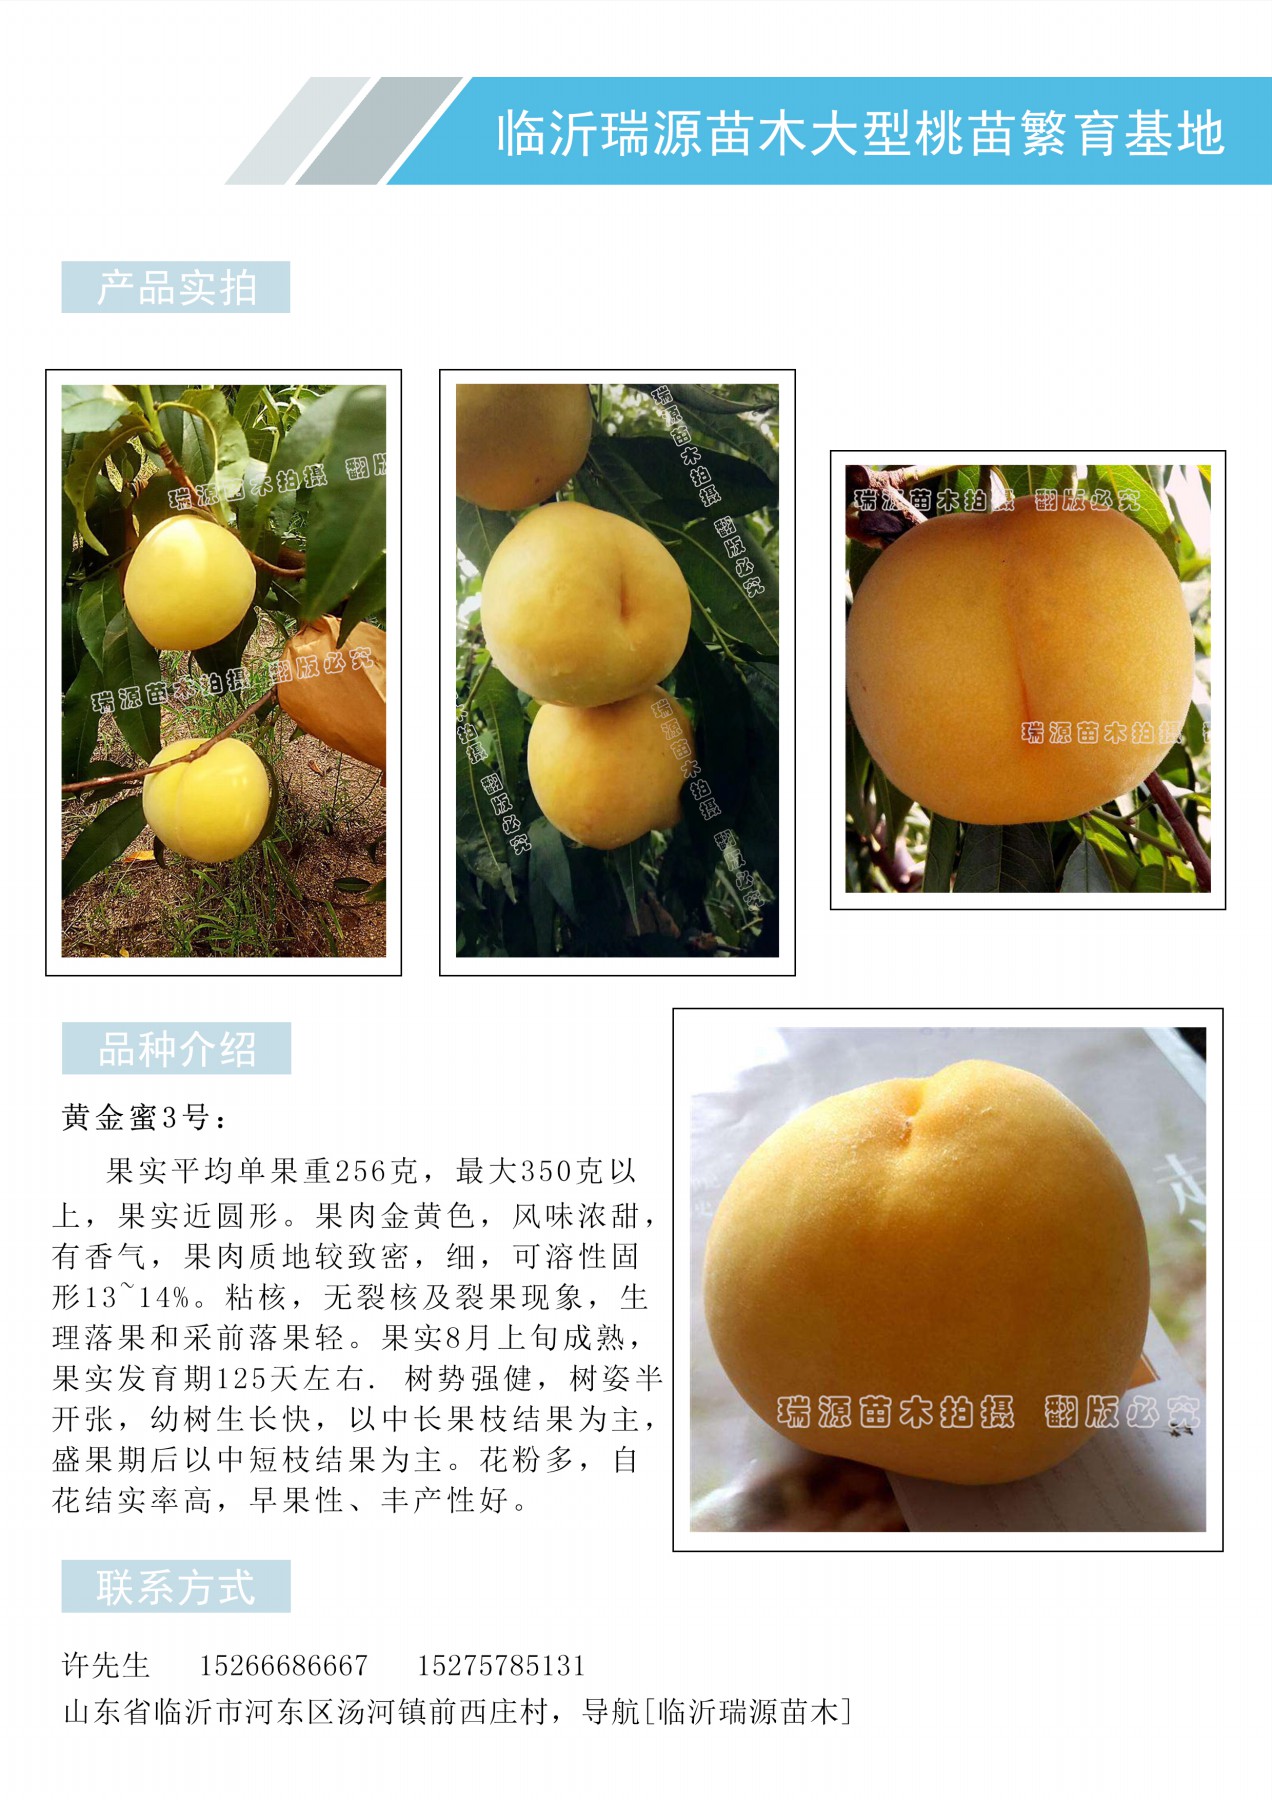 33一10桃品种介绍桃树的品种分类鉴别